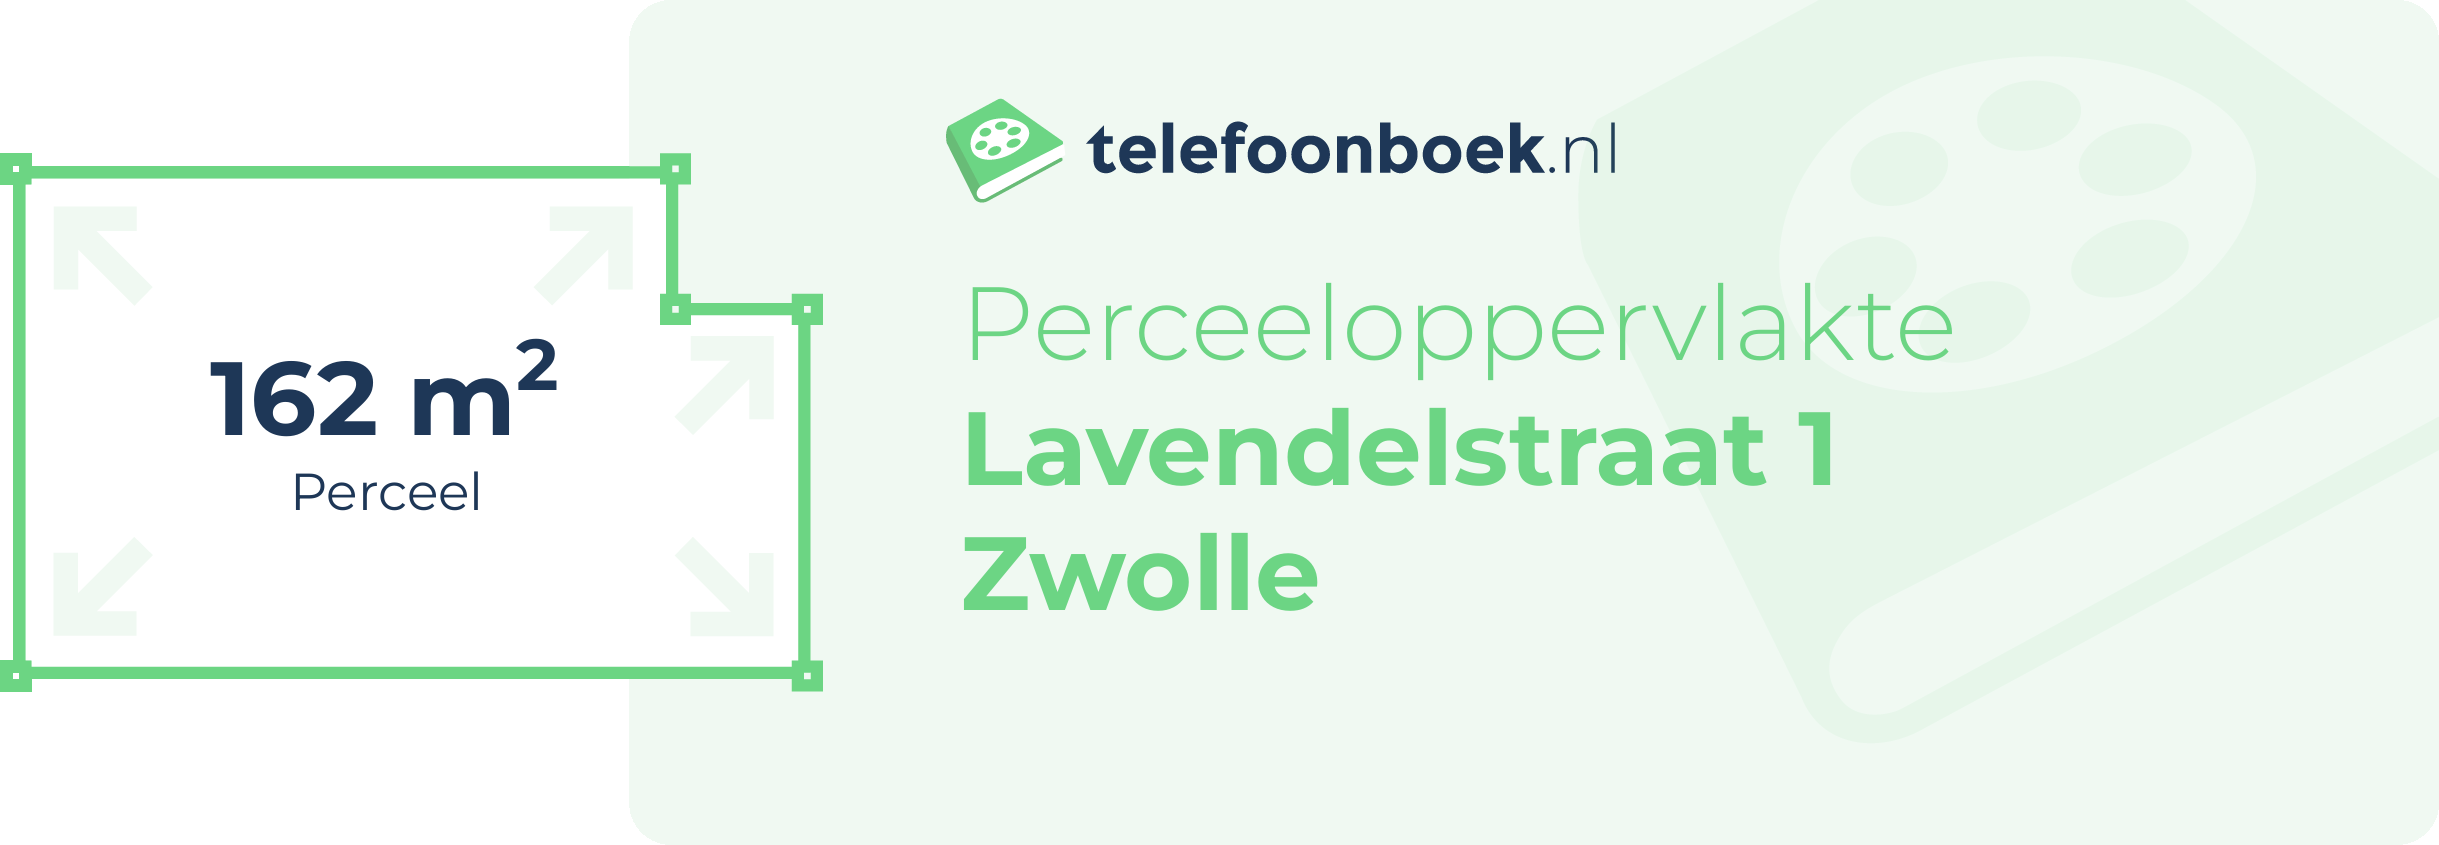 Perceeloppervlakte Lavendelstraat 1 Zwolle